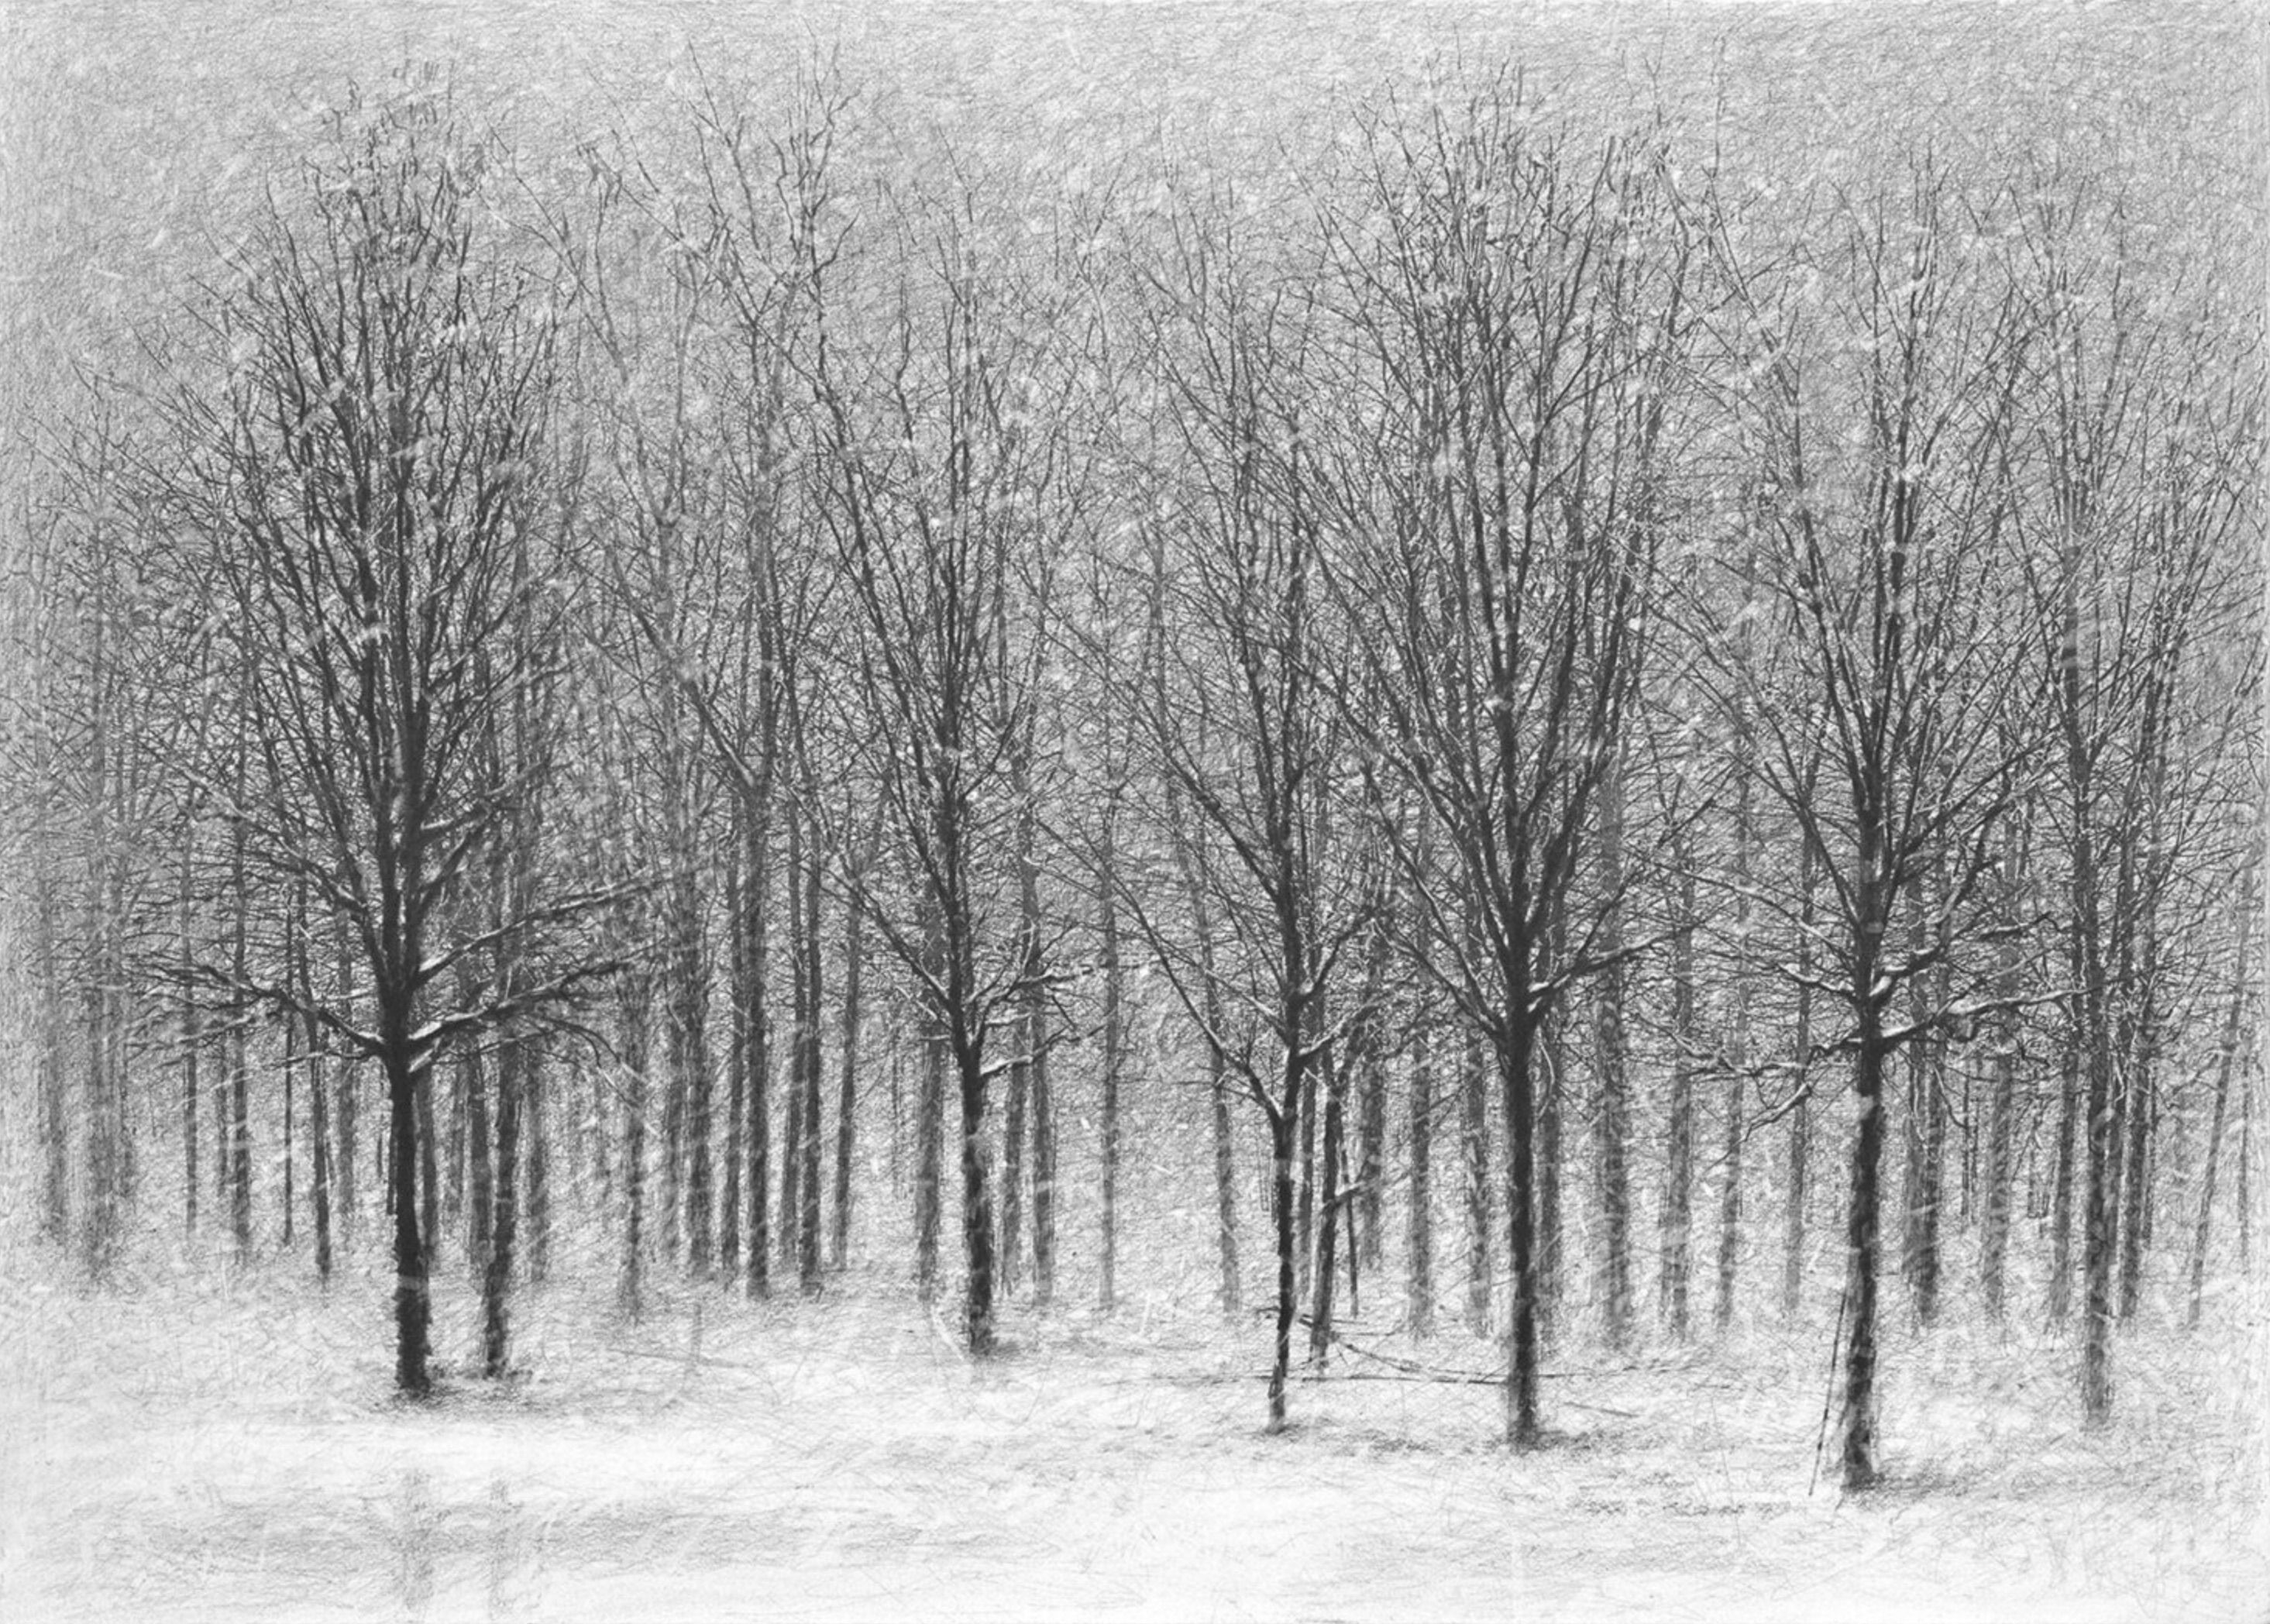 Danja Akulin Bleistift Kohle Zeichnung Bäume ohne Blätter im Winter Schnee